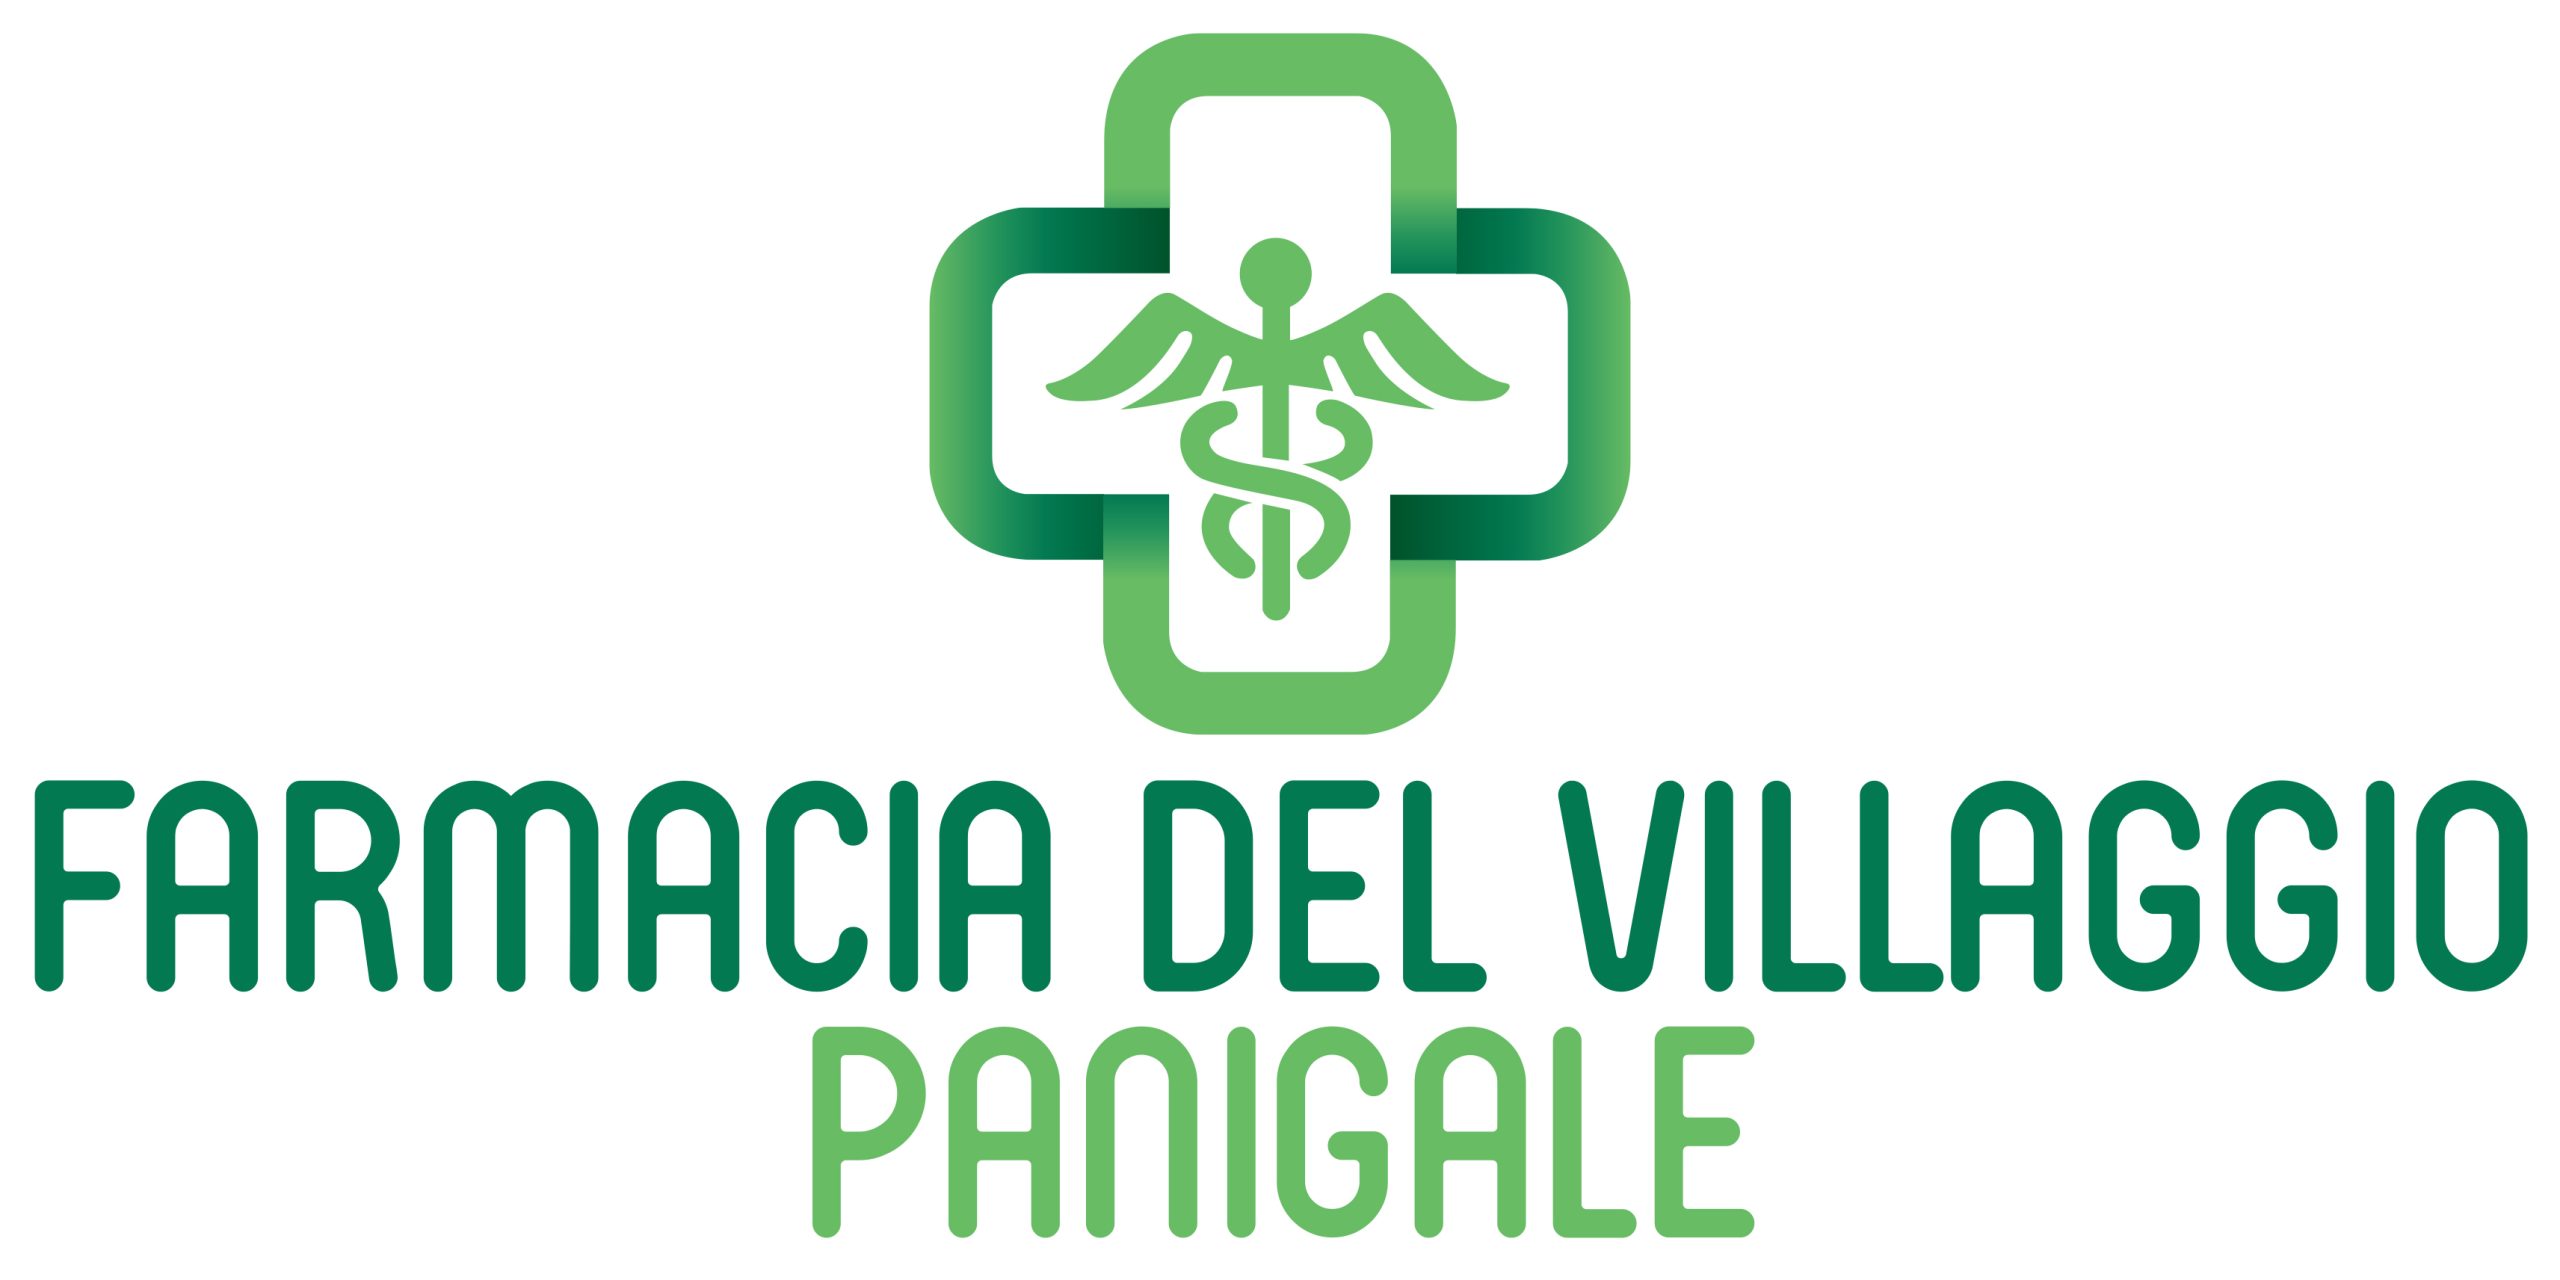 ABcommunication_Portfolio_logo_FarmaciaDelVillaggio